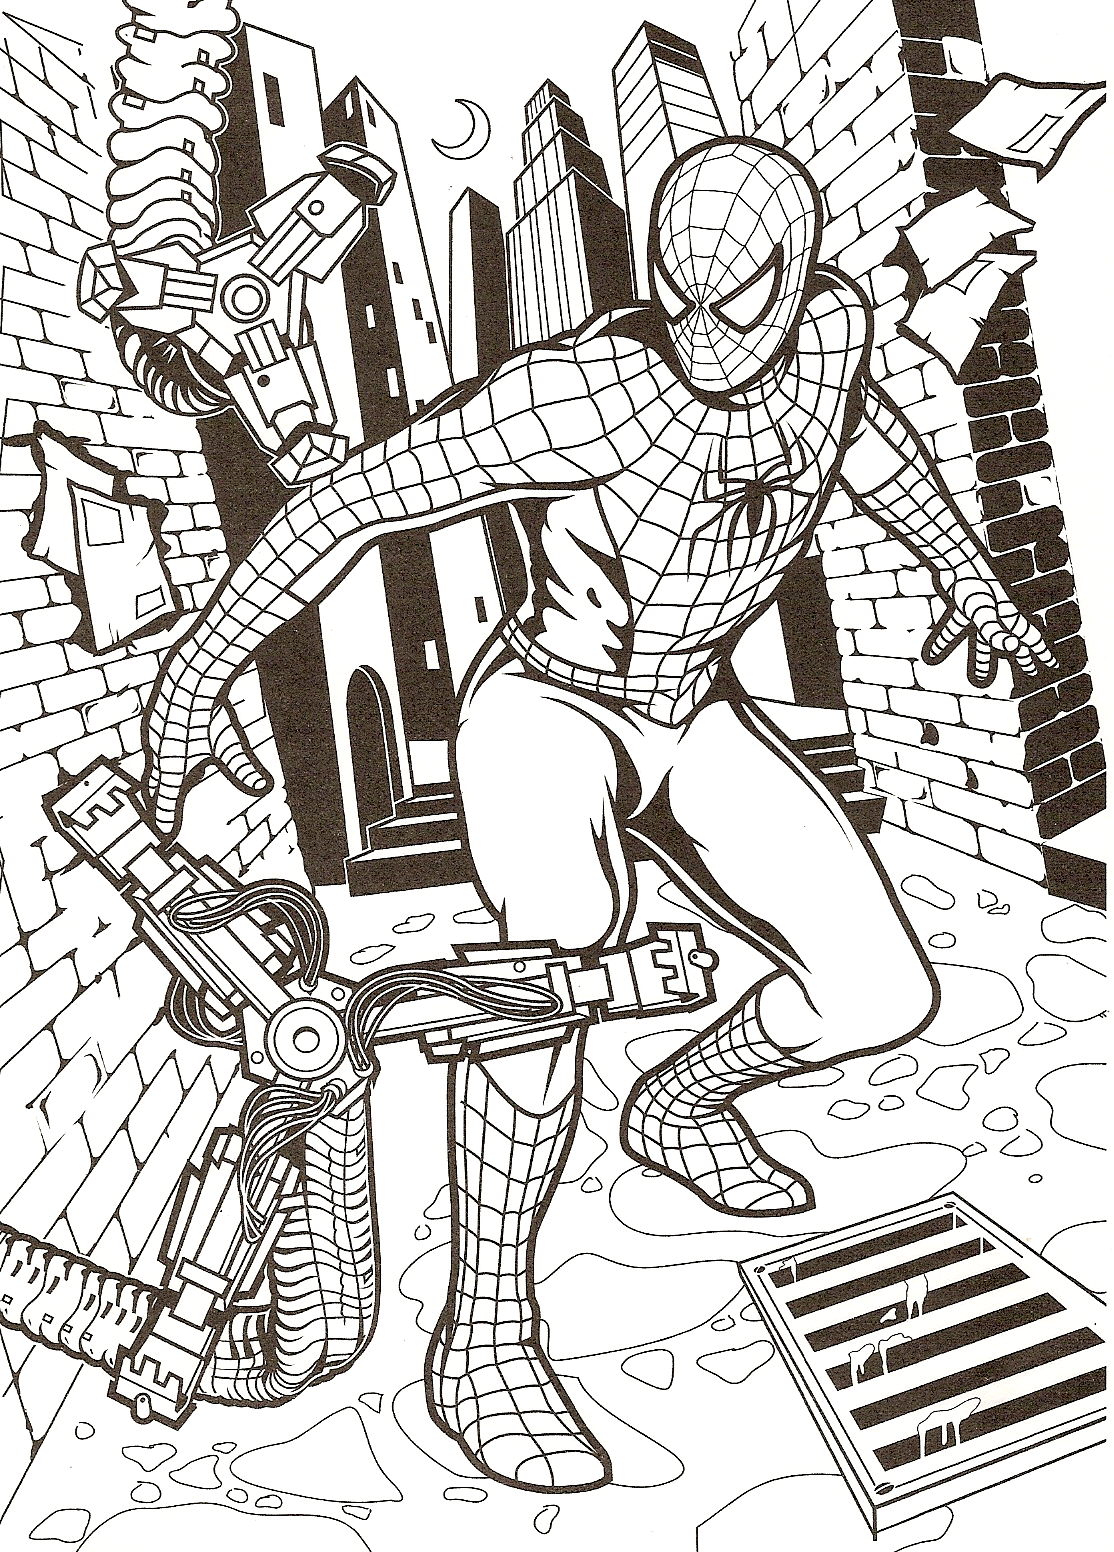 ¡Spiderman en la calle listo para dar una paliza a un malo!